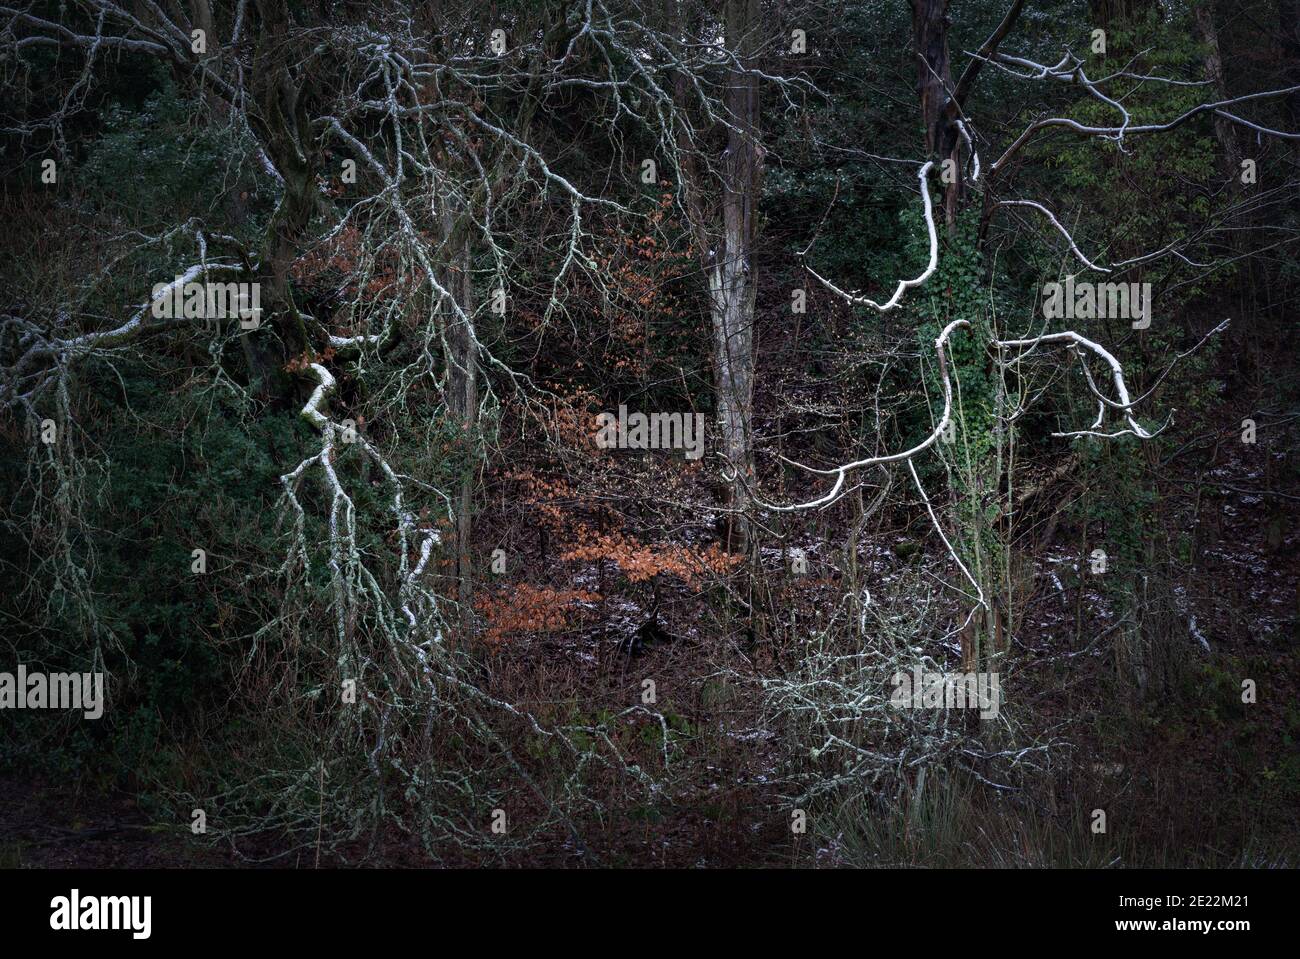 Paysage boisé d'hiver sombre - au bord de la forêt avec des branches et des arbres entortillés et effrayants qui s'estompent dans une obscurité sombre au-delà de la ligne de treeline. Banque D'Images